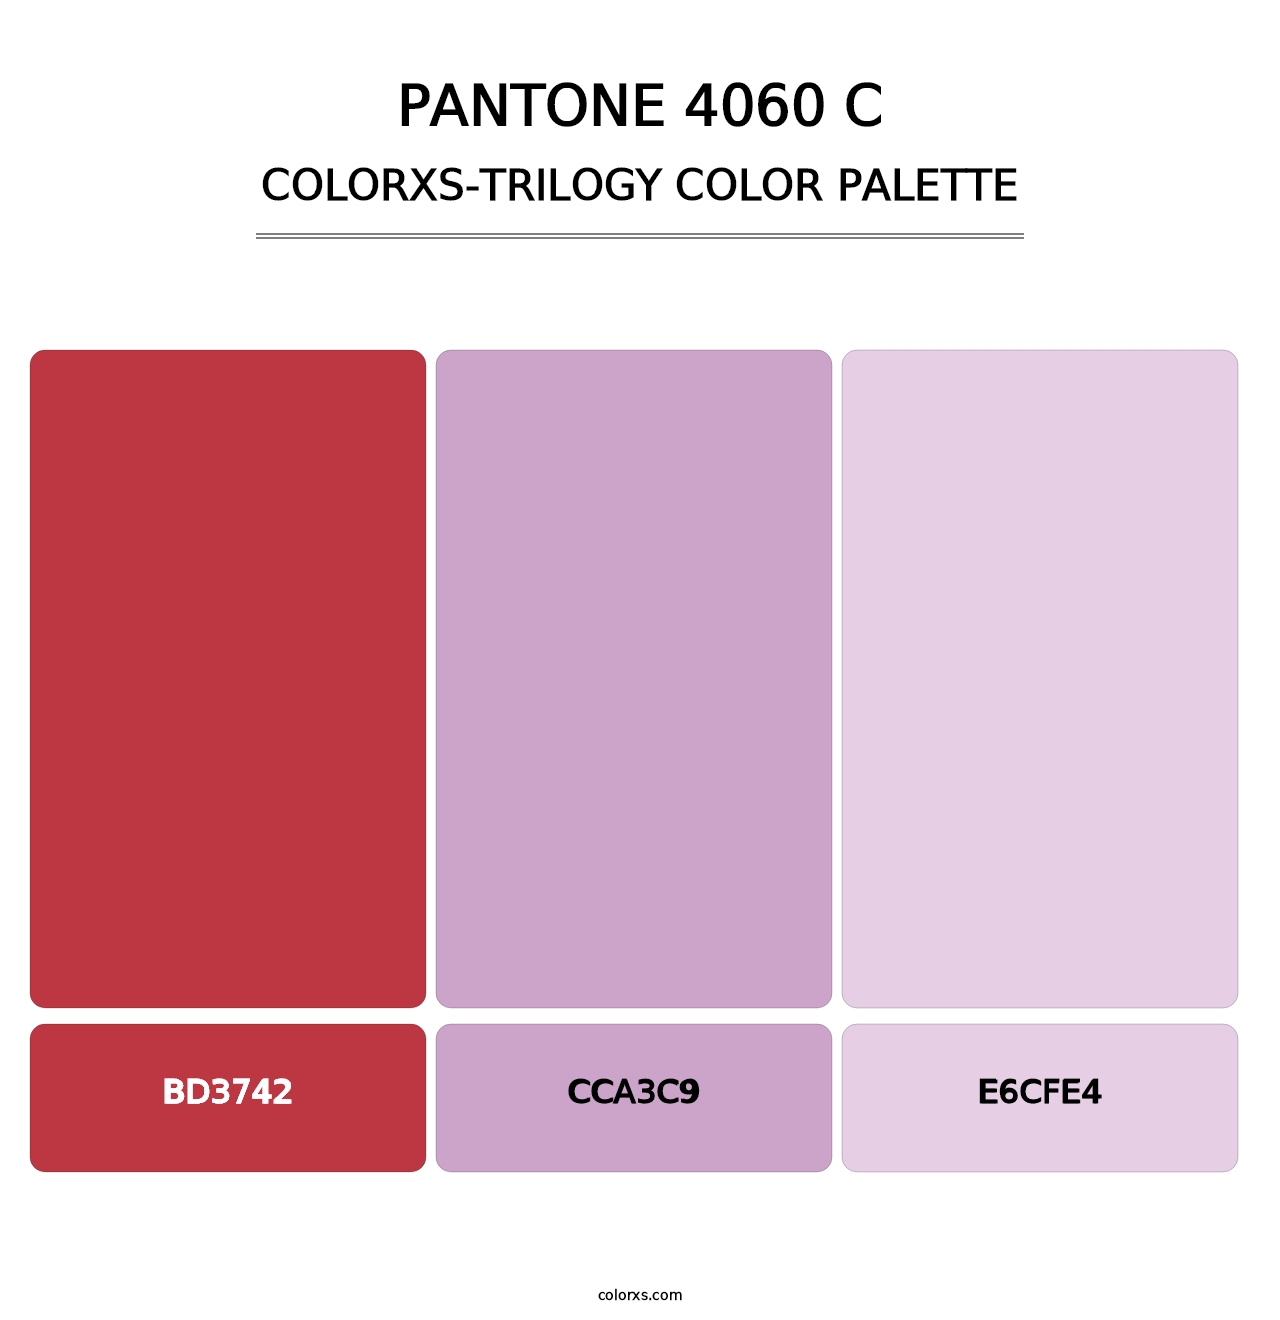 PANTONE 4060 C - Colorxs Trilogy Palette